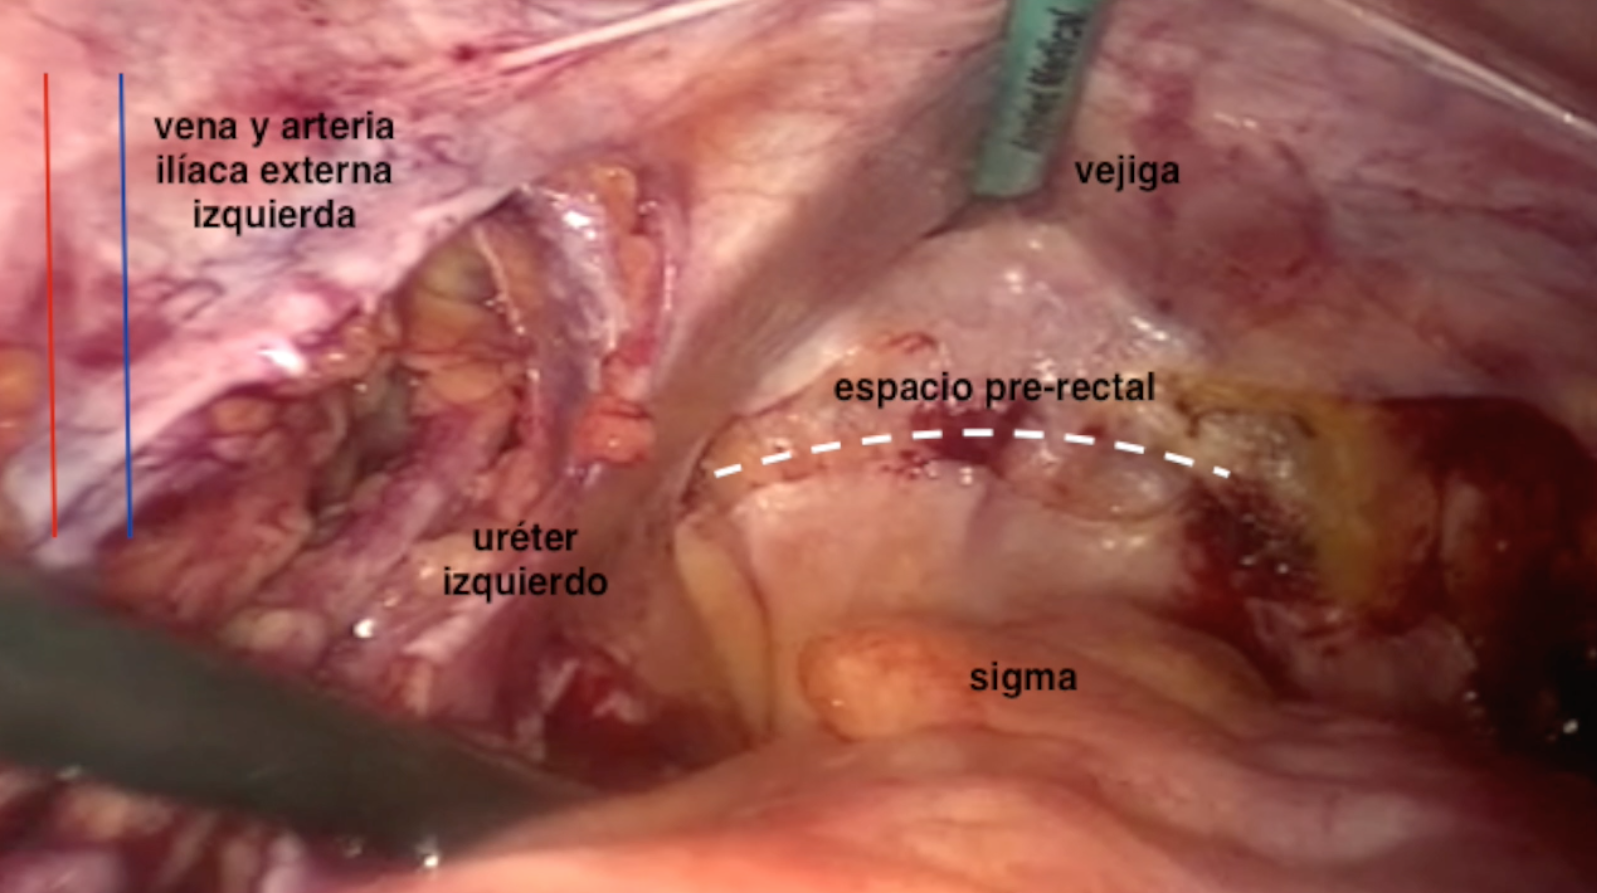 Cistectomía radical laparoscópica